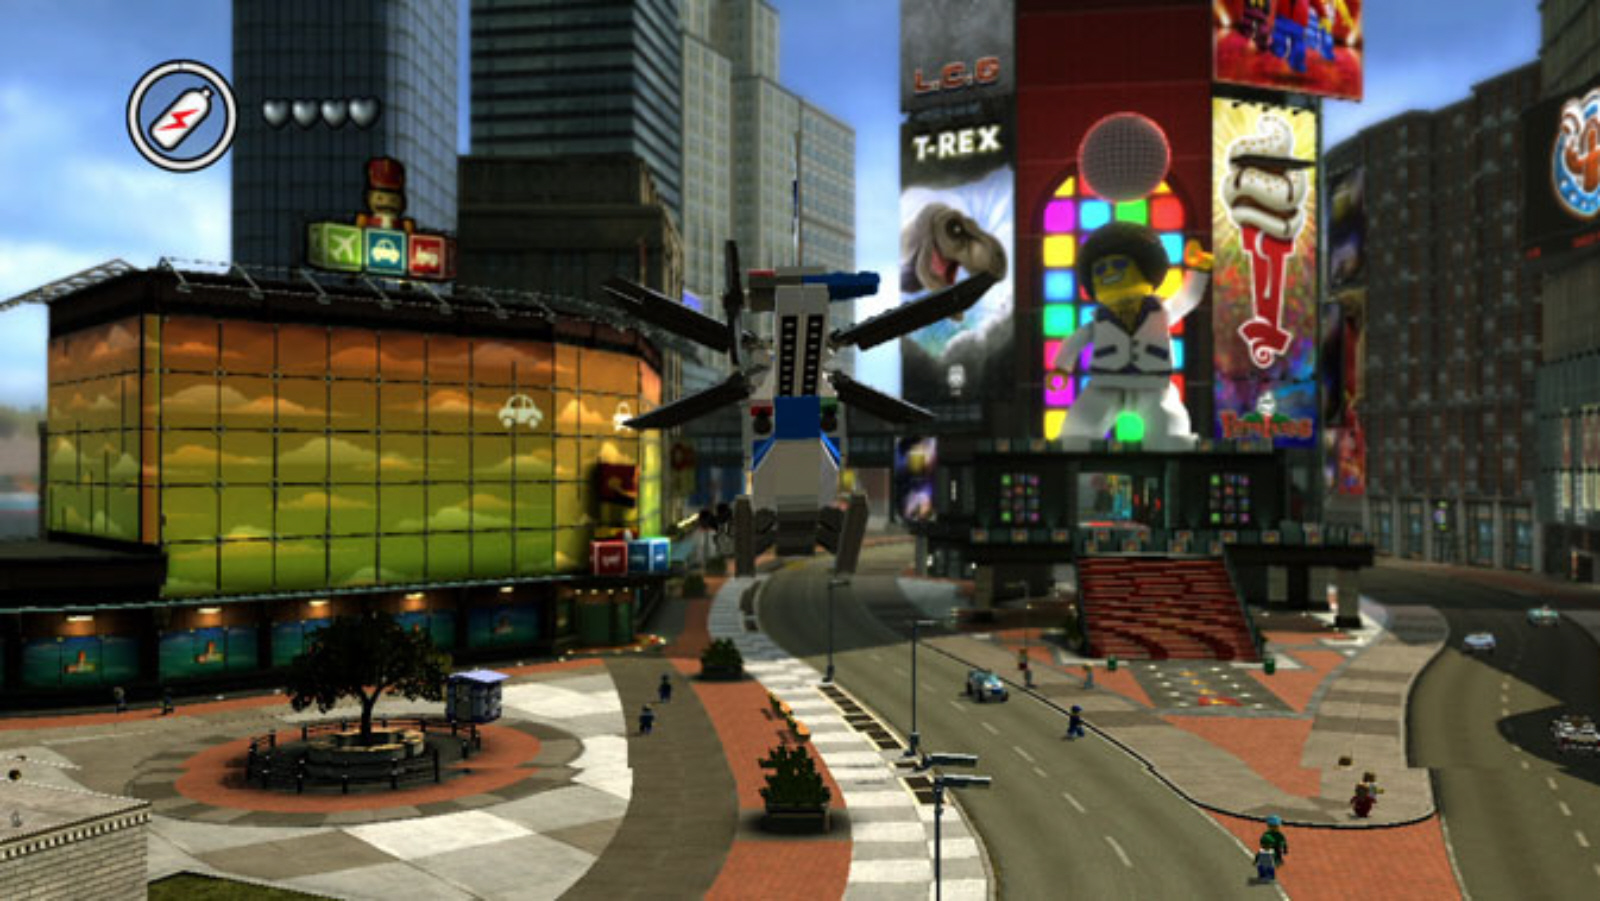 LEGO City Undercover - Wii U vs. Switch comparison